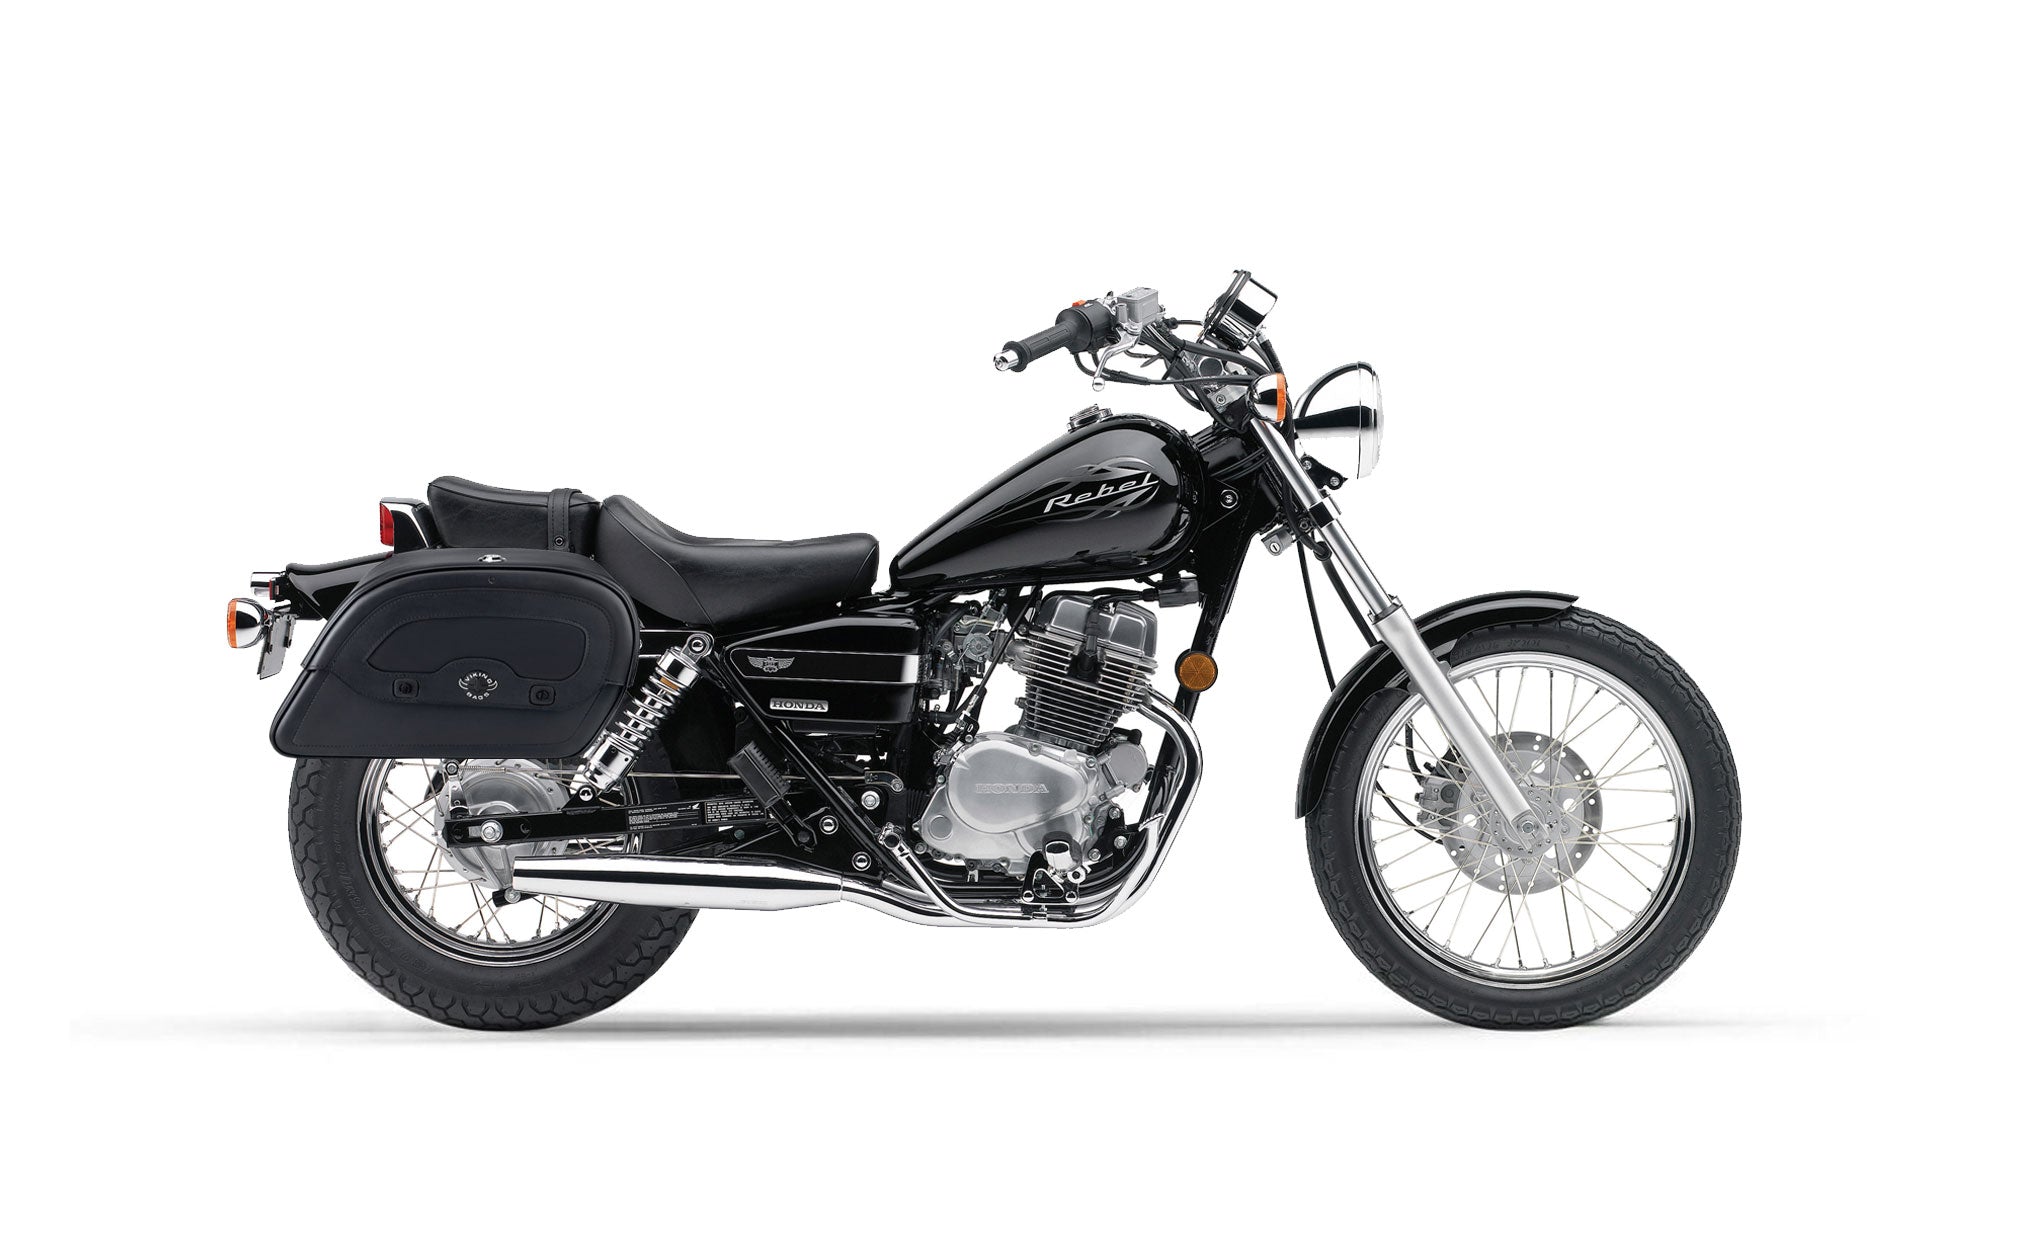 Viking Warrior Medium Honda Rebel 250 Leather Motorcycle Saddlebags on Bike Photo @expand